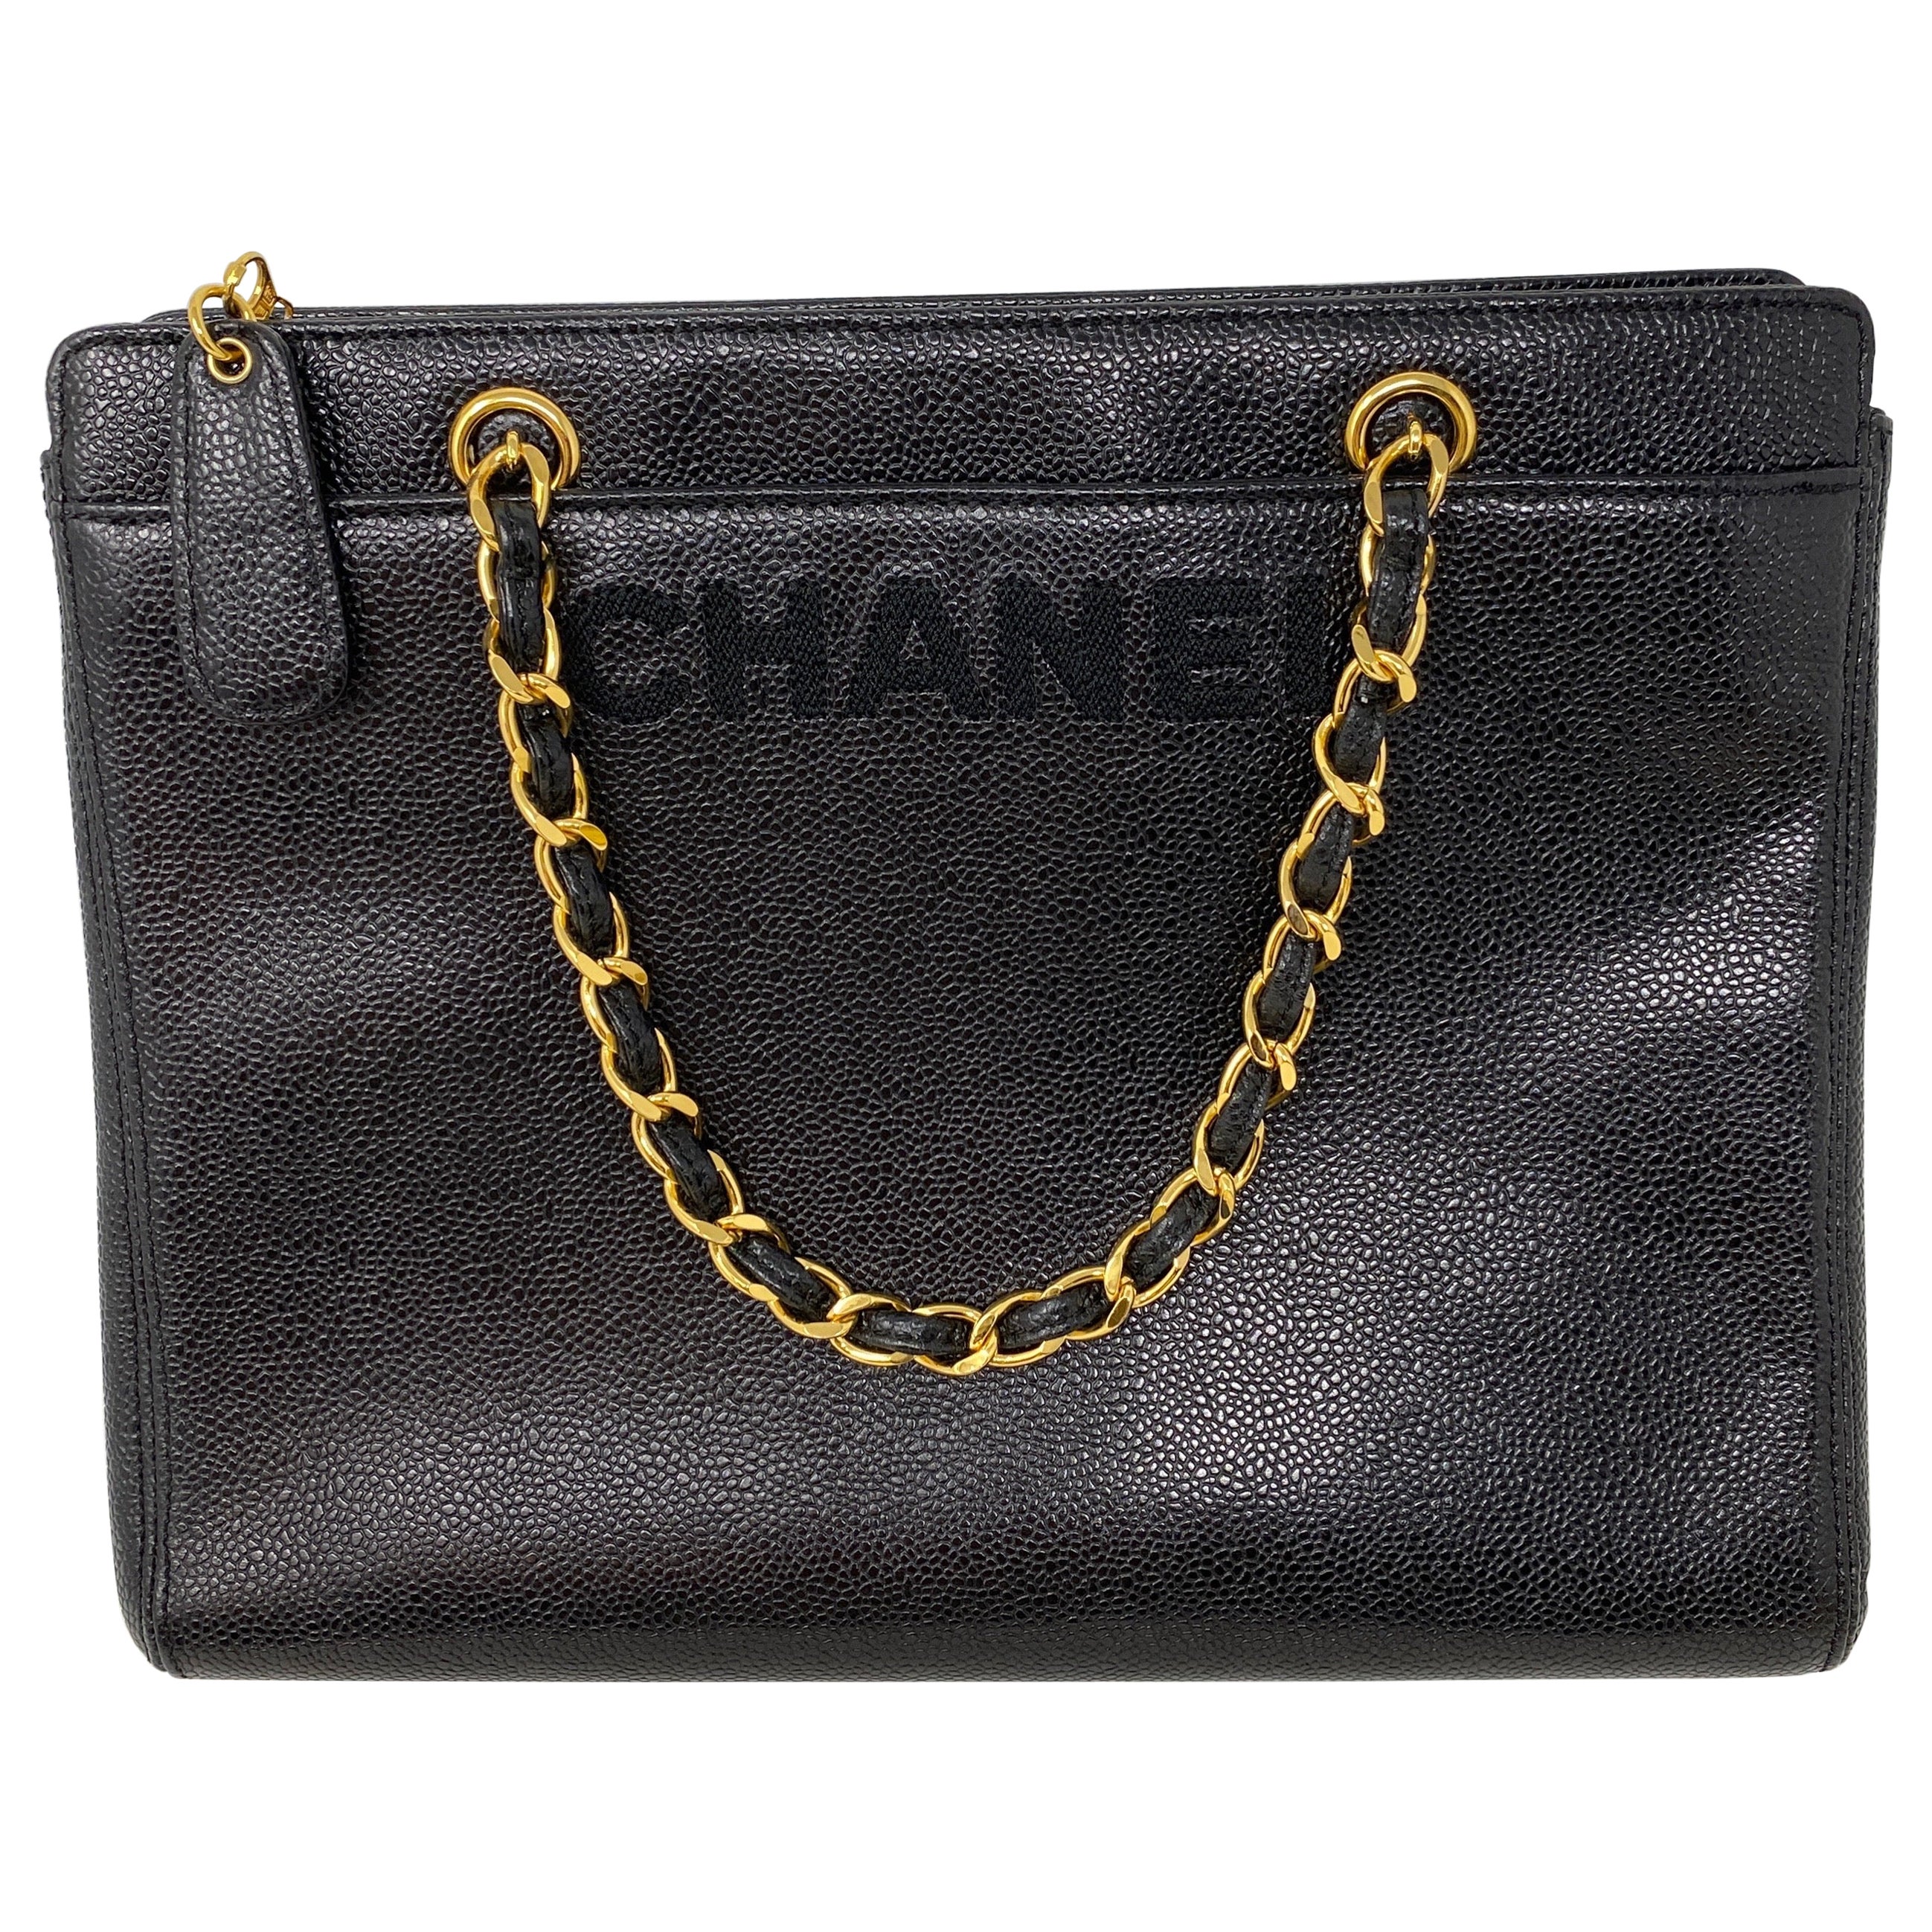 Chanel Vintage Black Tote Bag 